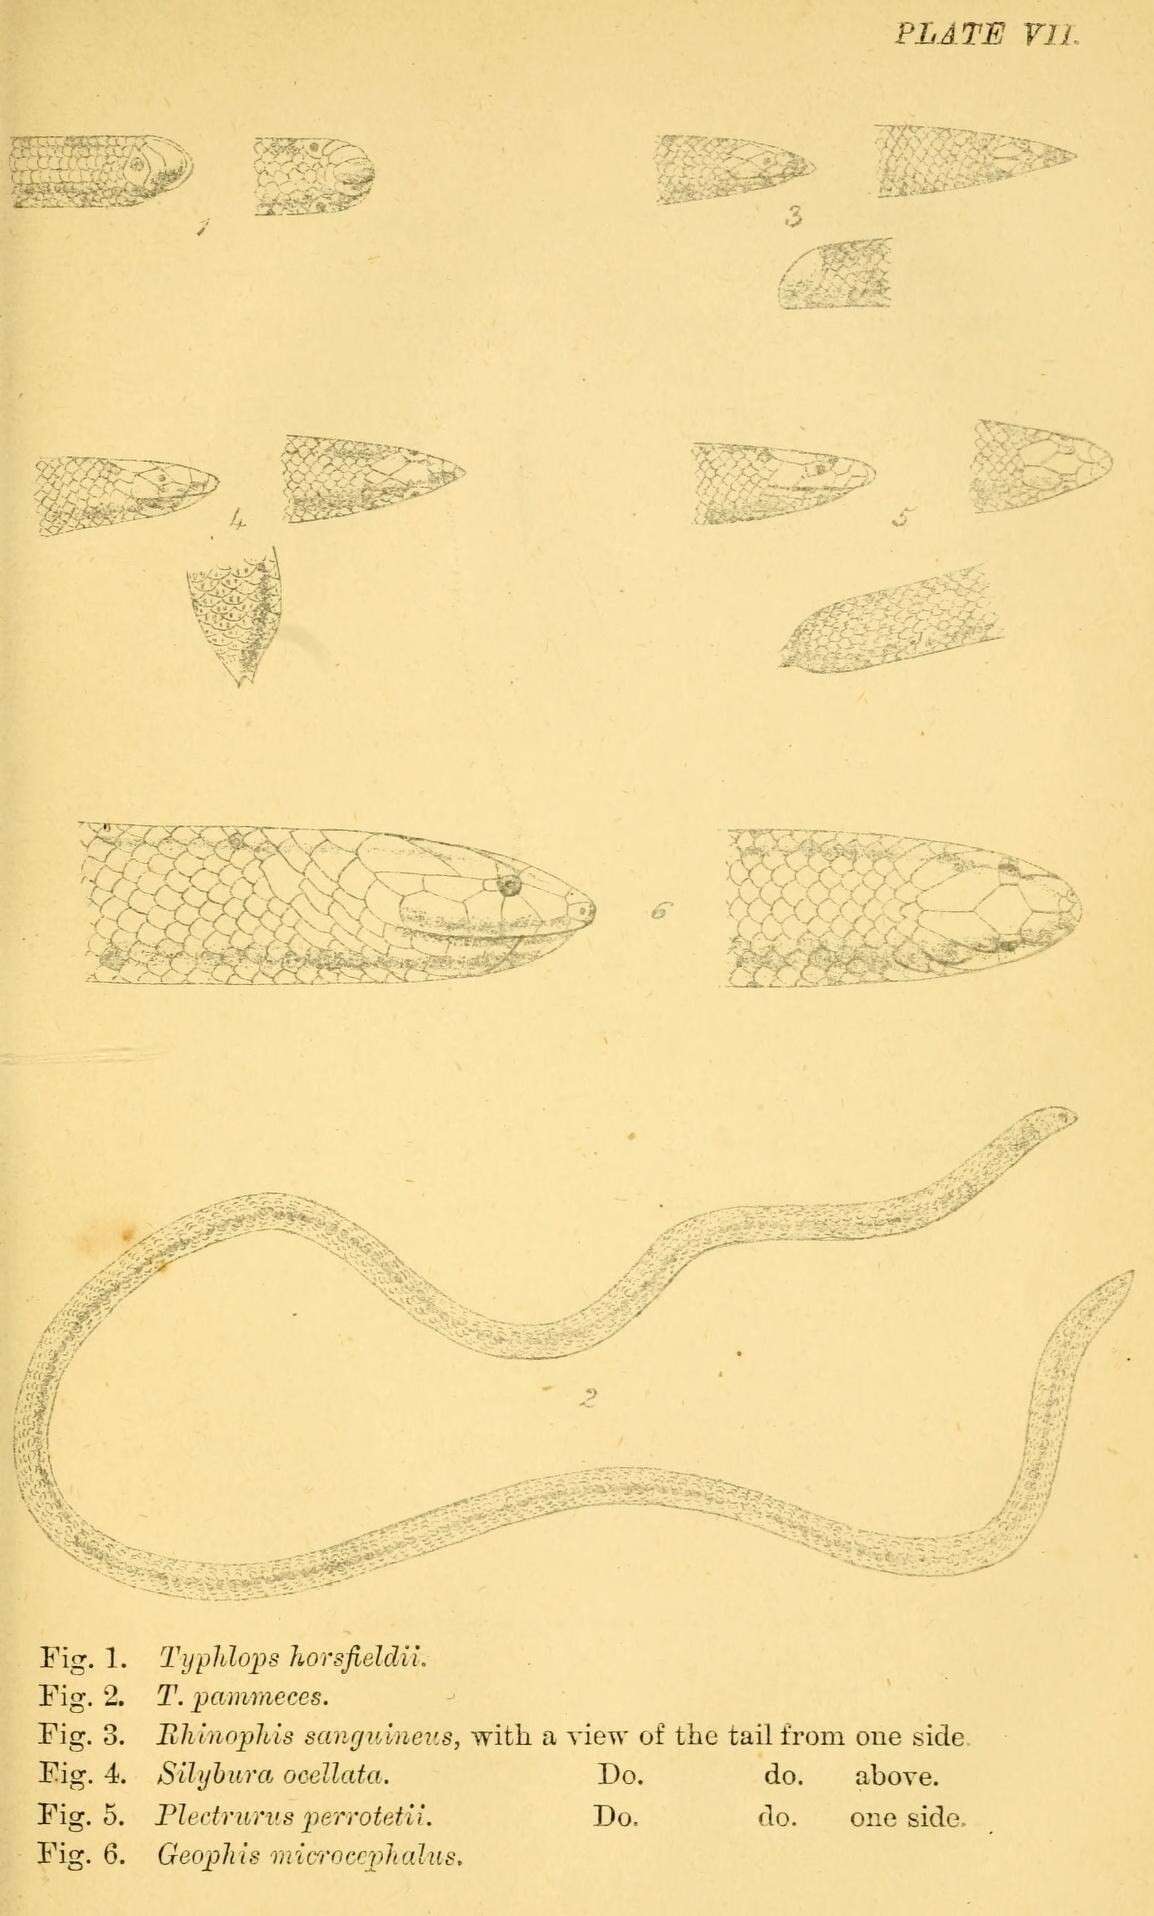 Sivun Indotyphlops pammeces (Günther 1864) kuva